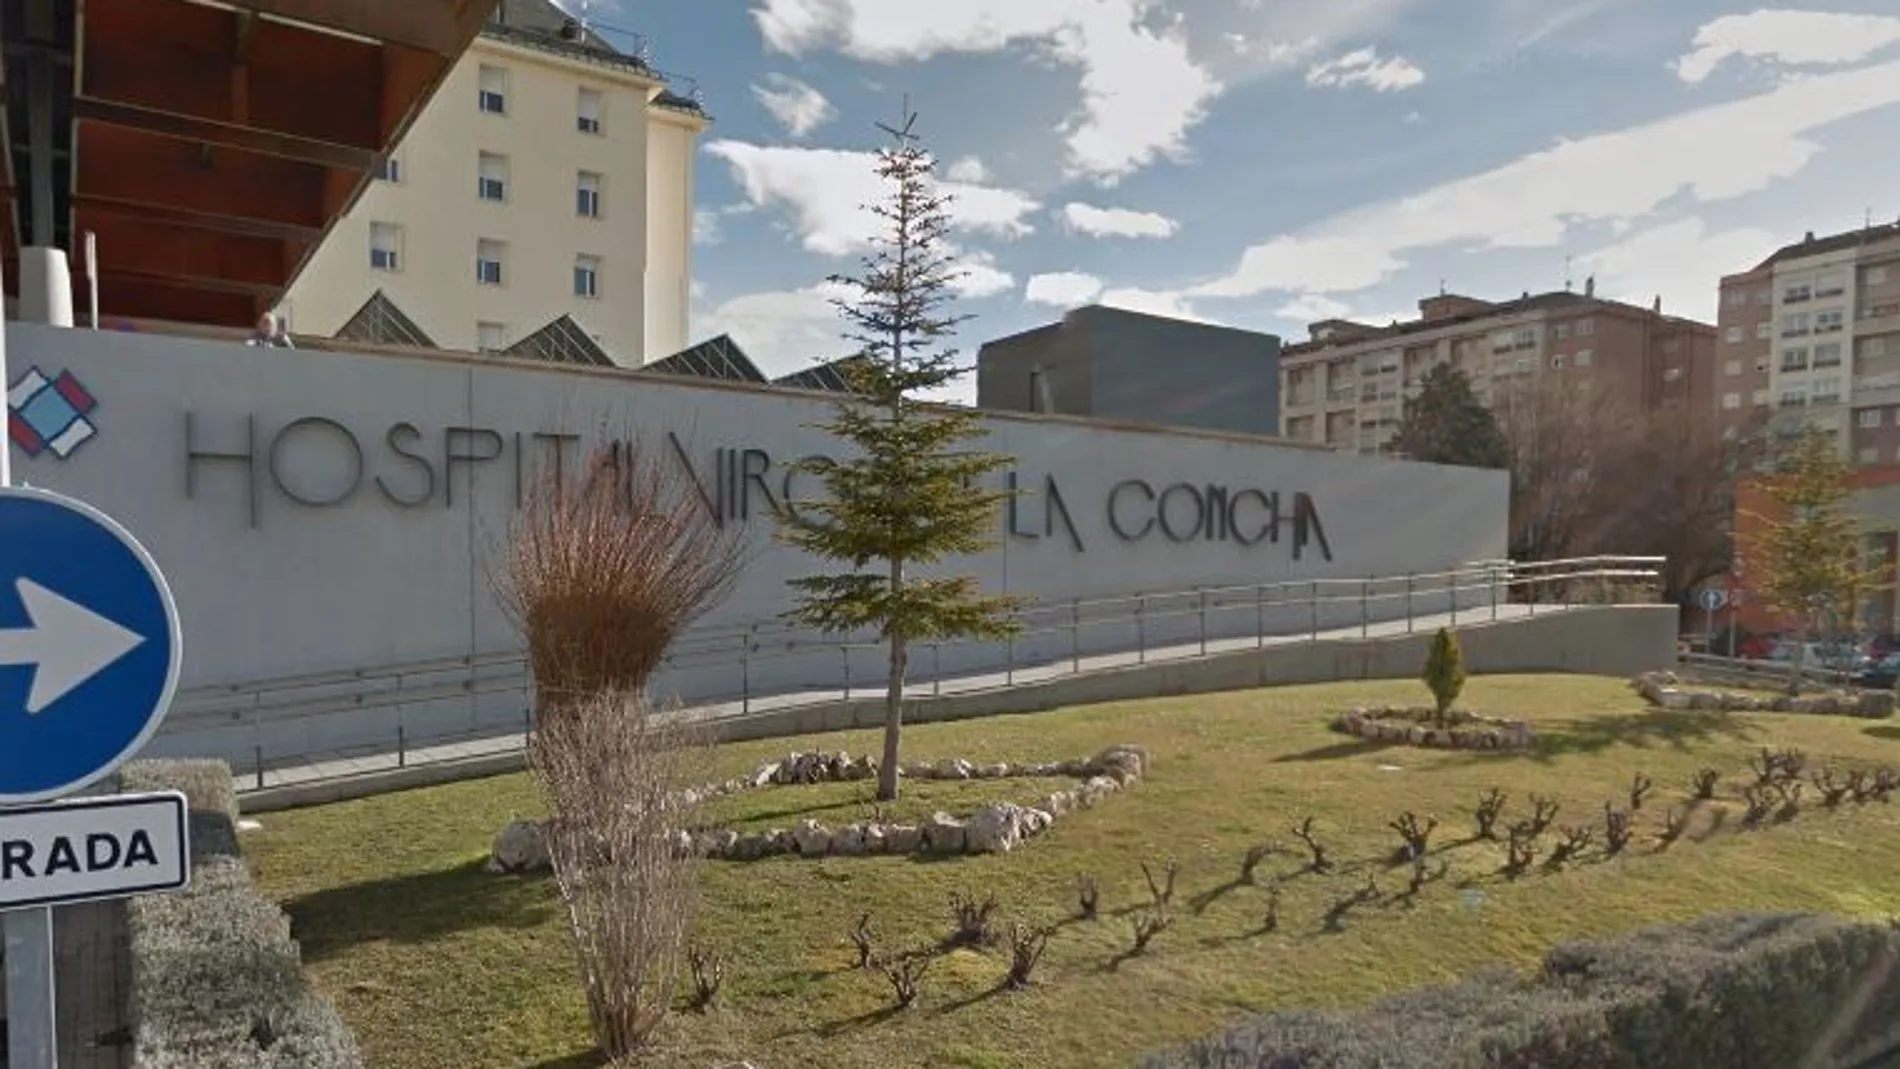 Hospital Virgen de la Concha de Zamora donde se halla hospitalizado esta persona